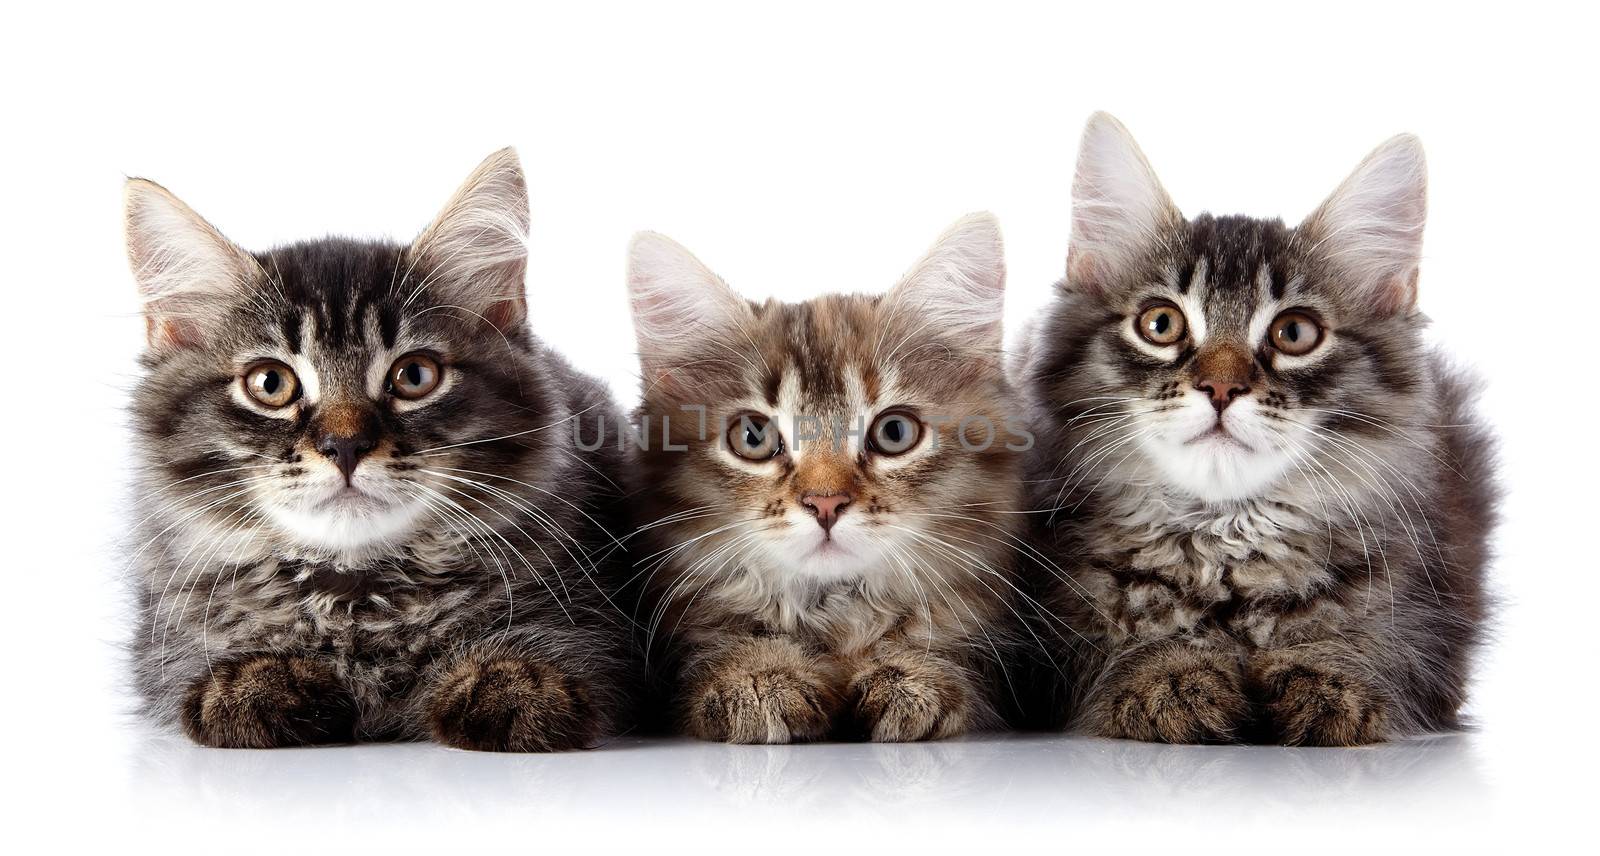 Three fluffy cats on a white background. by Azaliya